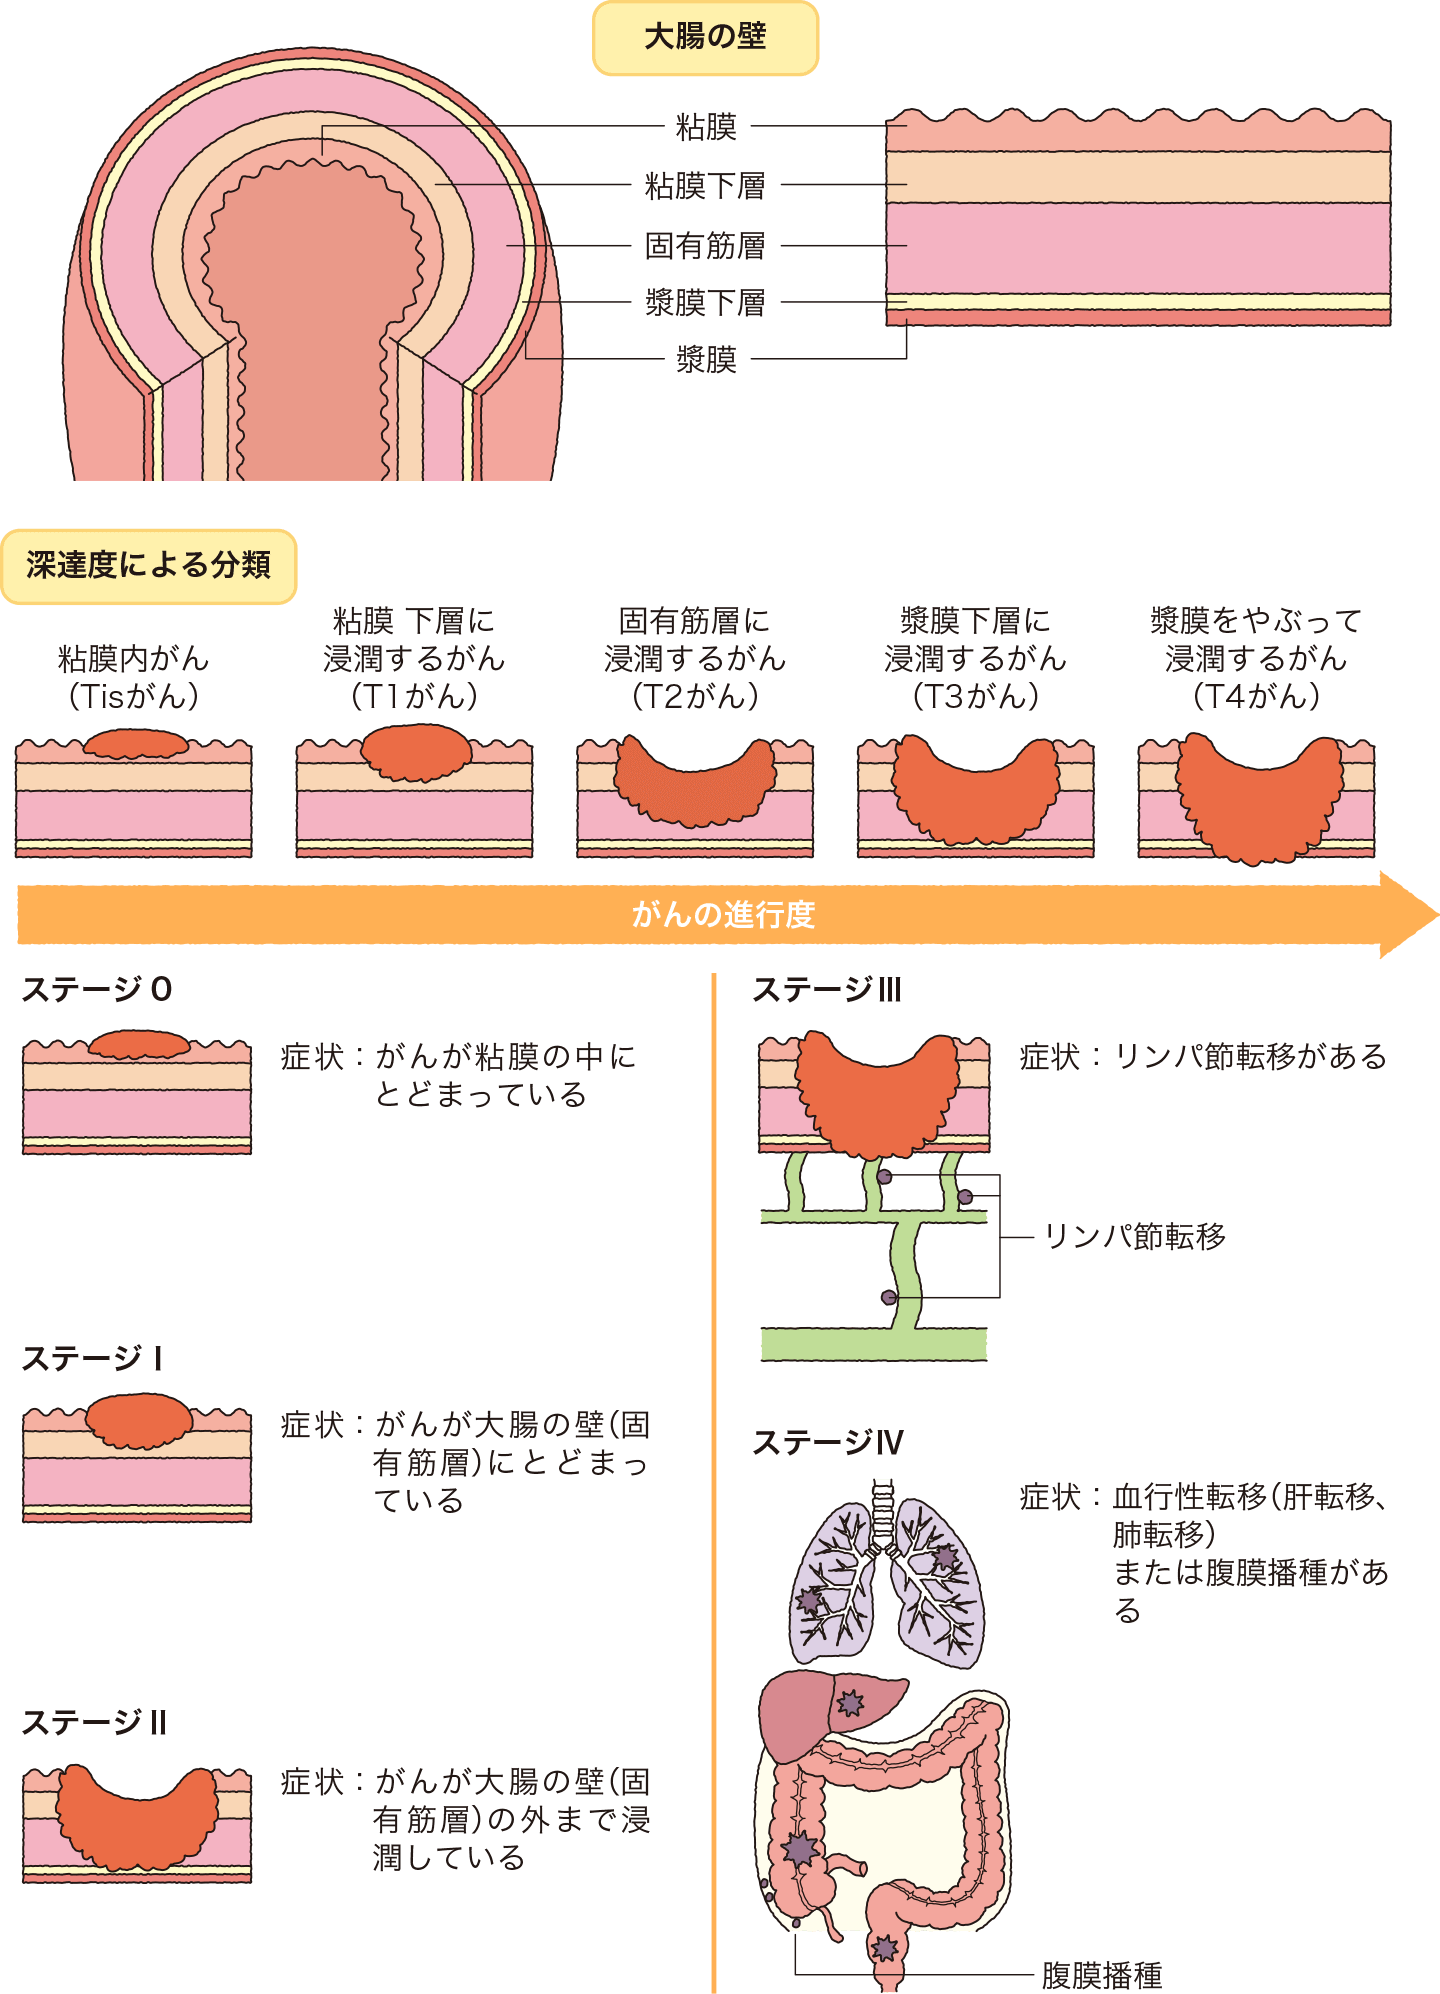 大腸の壁の構造・深達度（粘膜内がん、粘膜下層に浸潤するがん、固有筋層に浸潤するがん、漿膜下層に浸潤するがん、漿膜をやぶって浸潤するがん）による分類・大腸がんの進行度